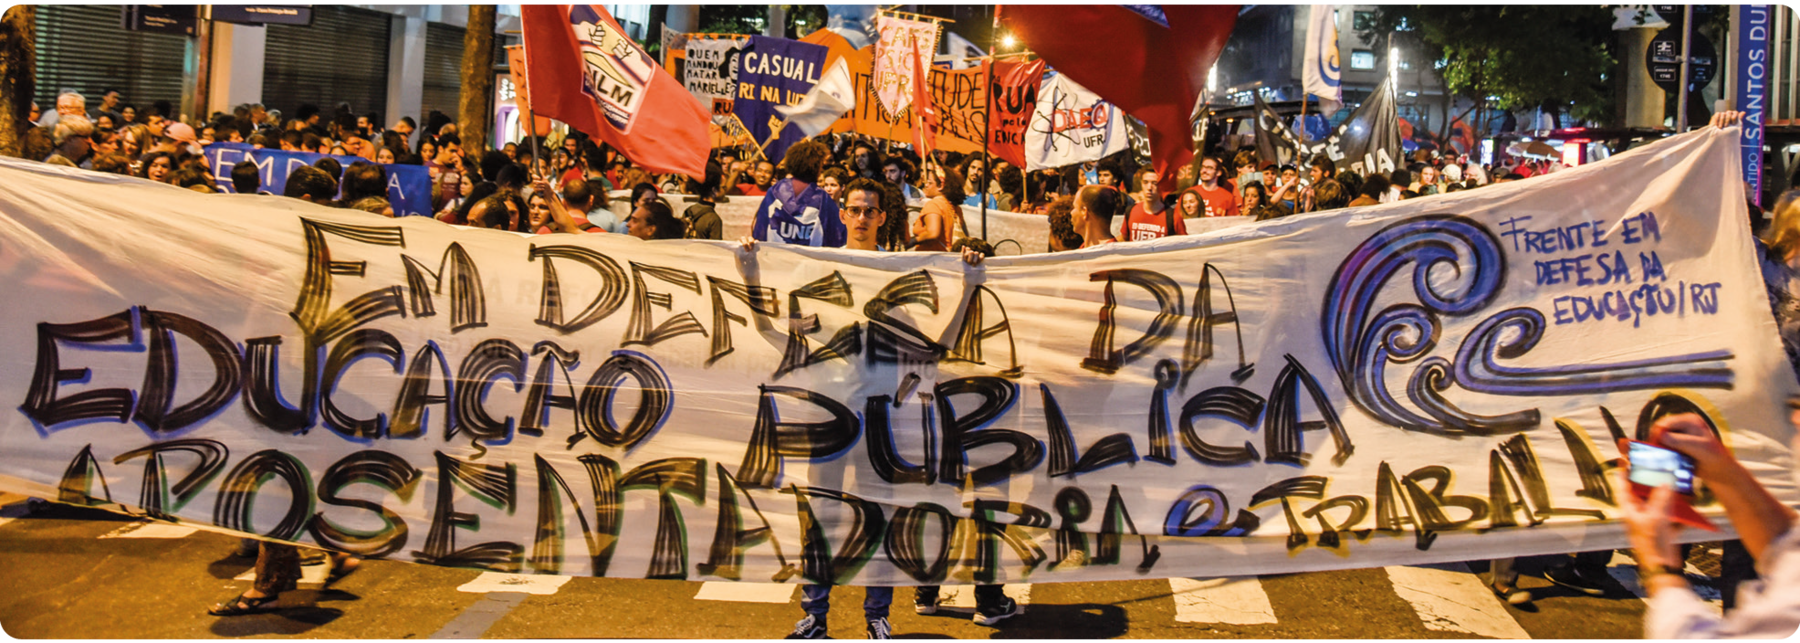 Fotografia. Pessoas segurando placas e cartazes em uma rua. Ao centro, o cartaz com o seguinte texto: EM DEFESA DA EDUCAÇÃO PÚBLICA. APOSENTADORIA E TRABALHO. FRENTE EM DEFESA DA EDUCAÇÃO. RIO DE JANEIRO.